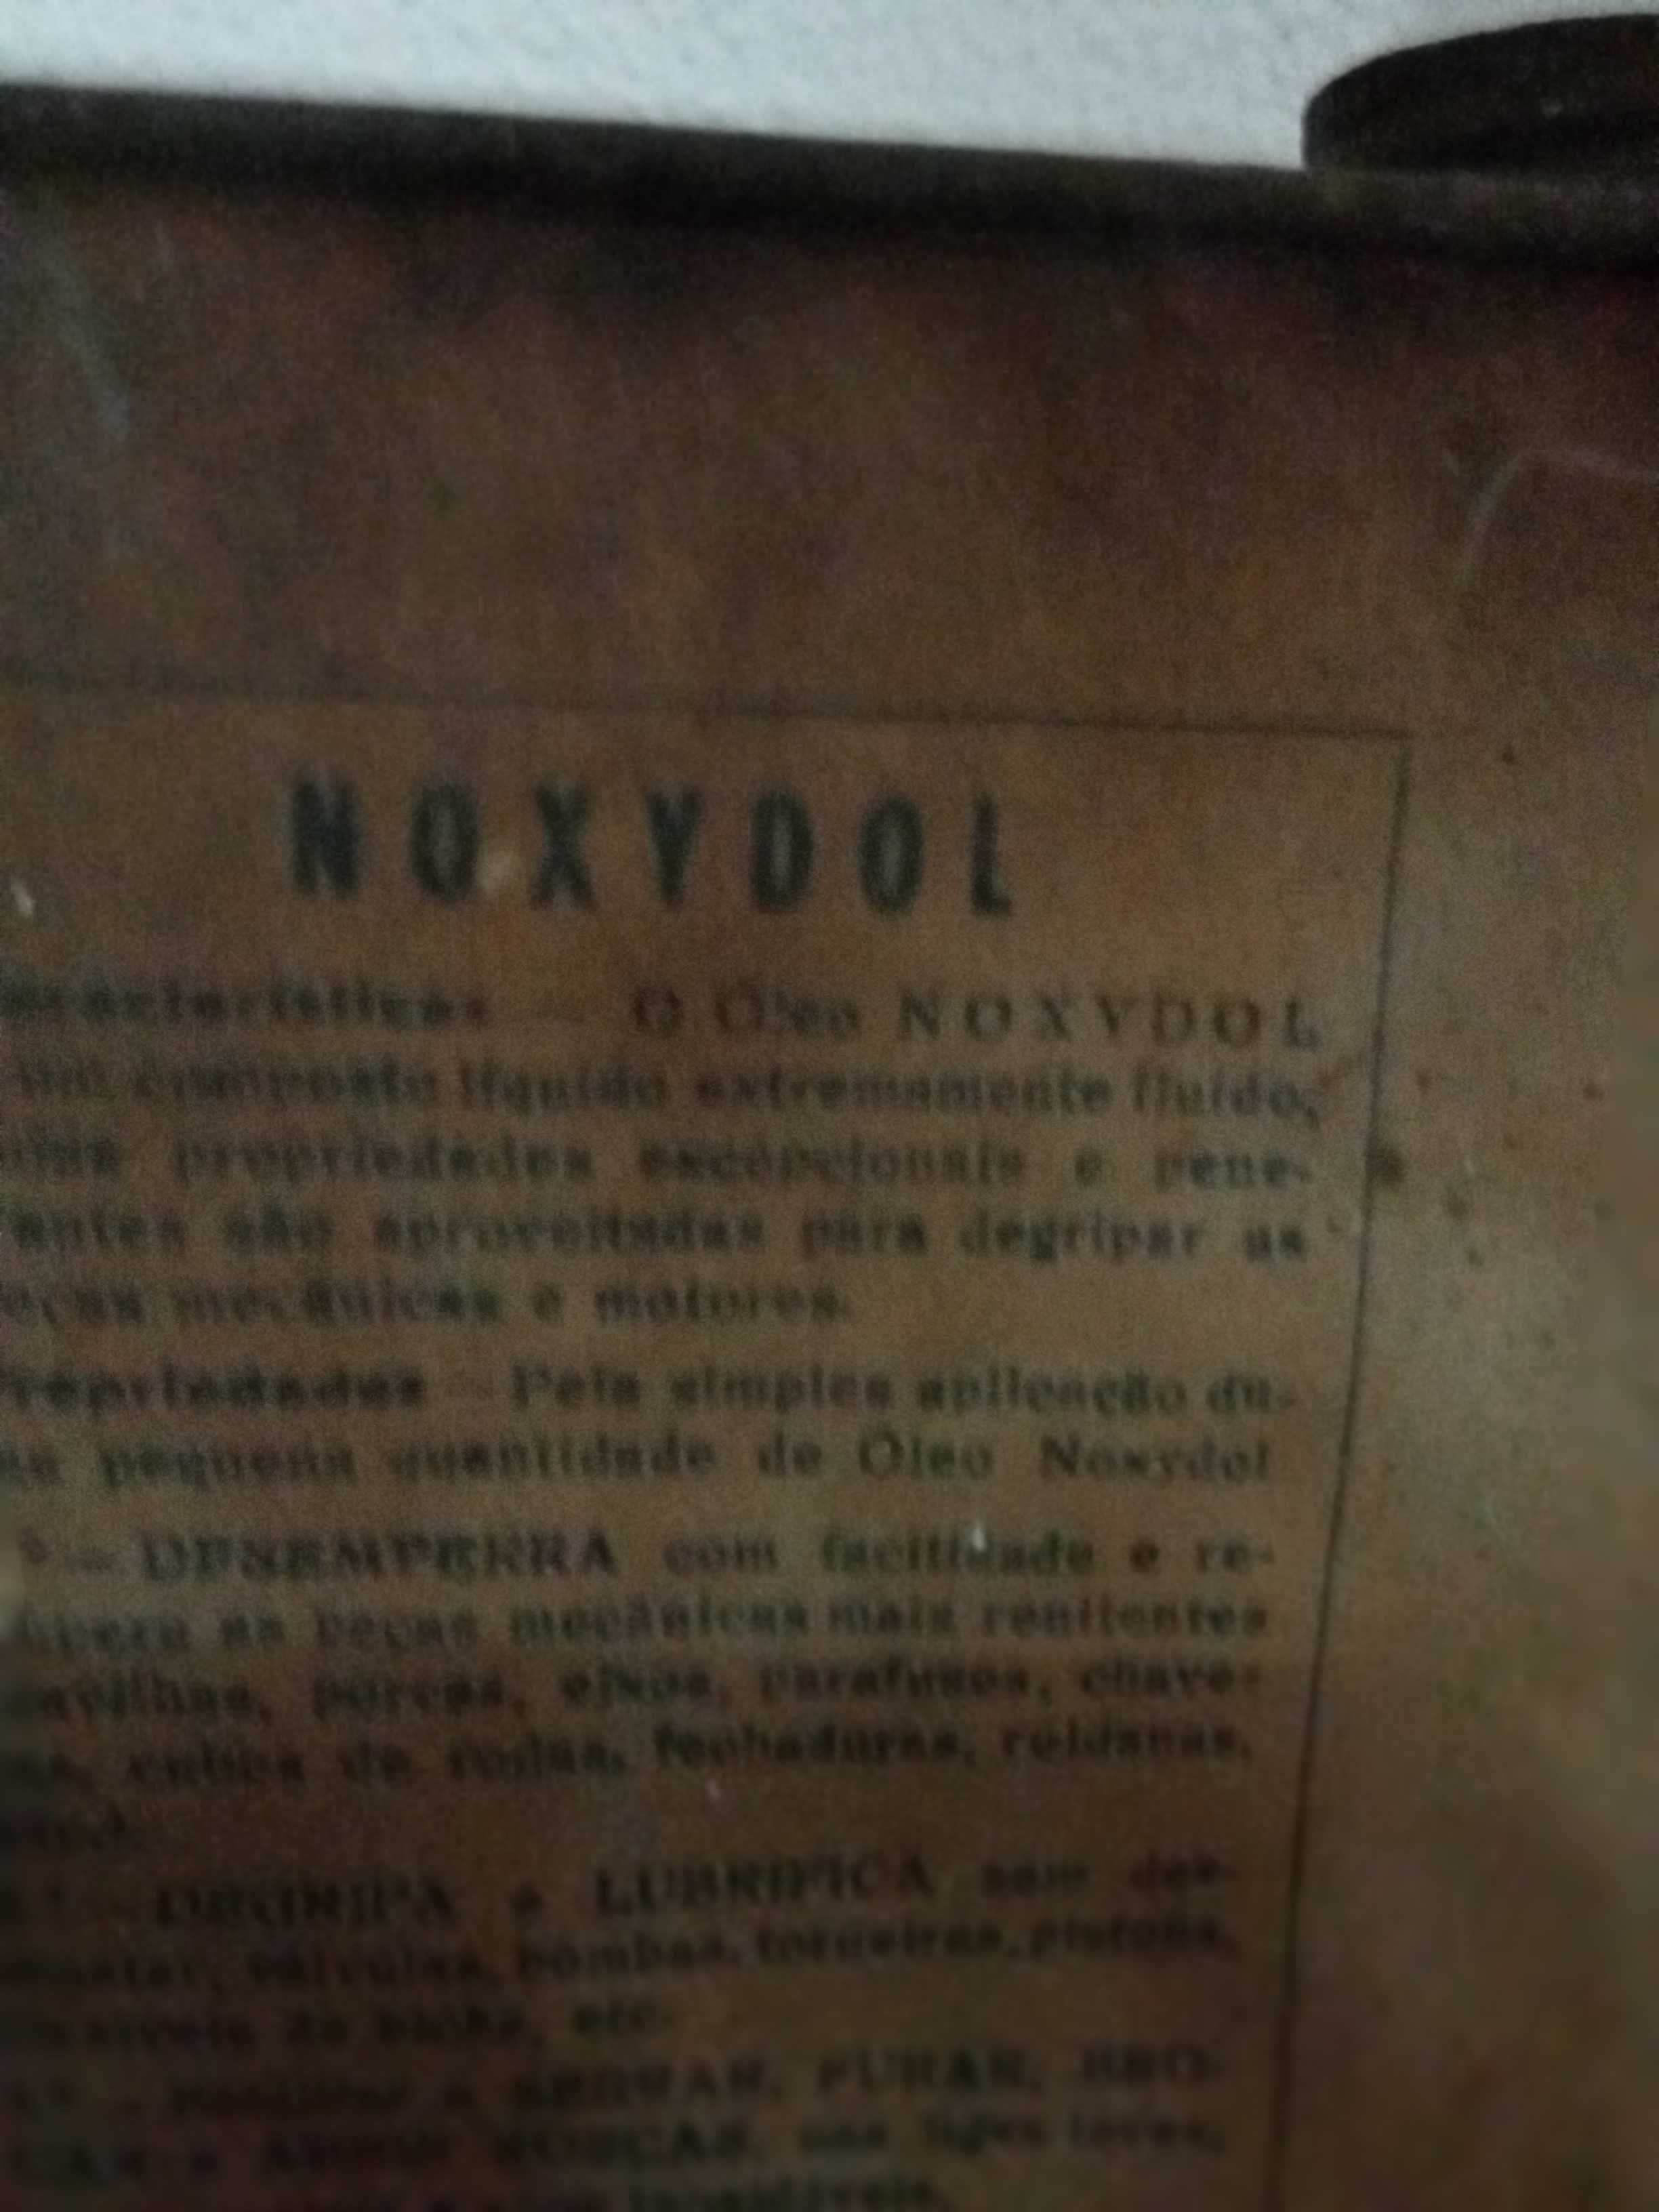 lata antiga Noxydol